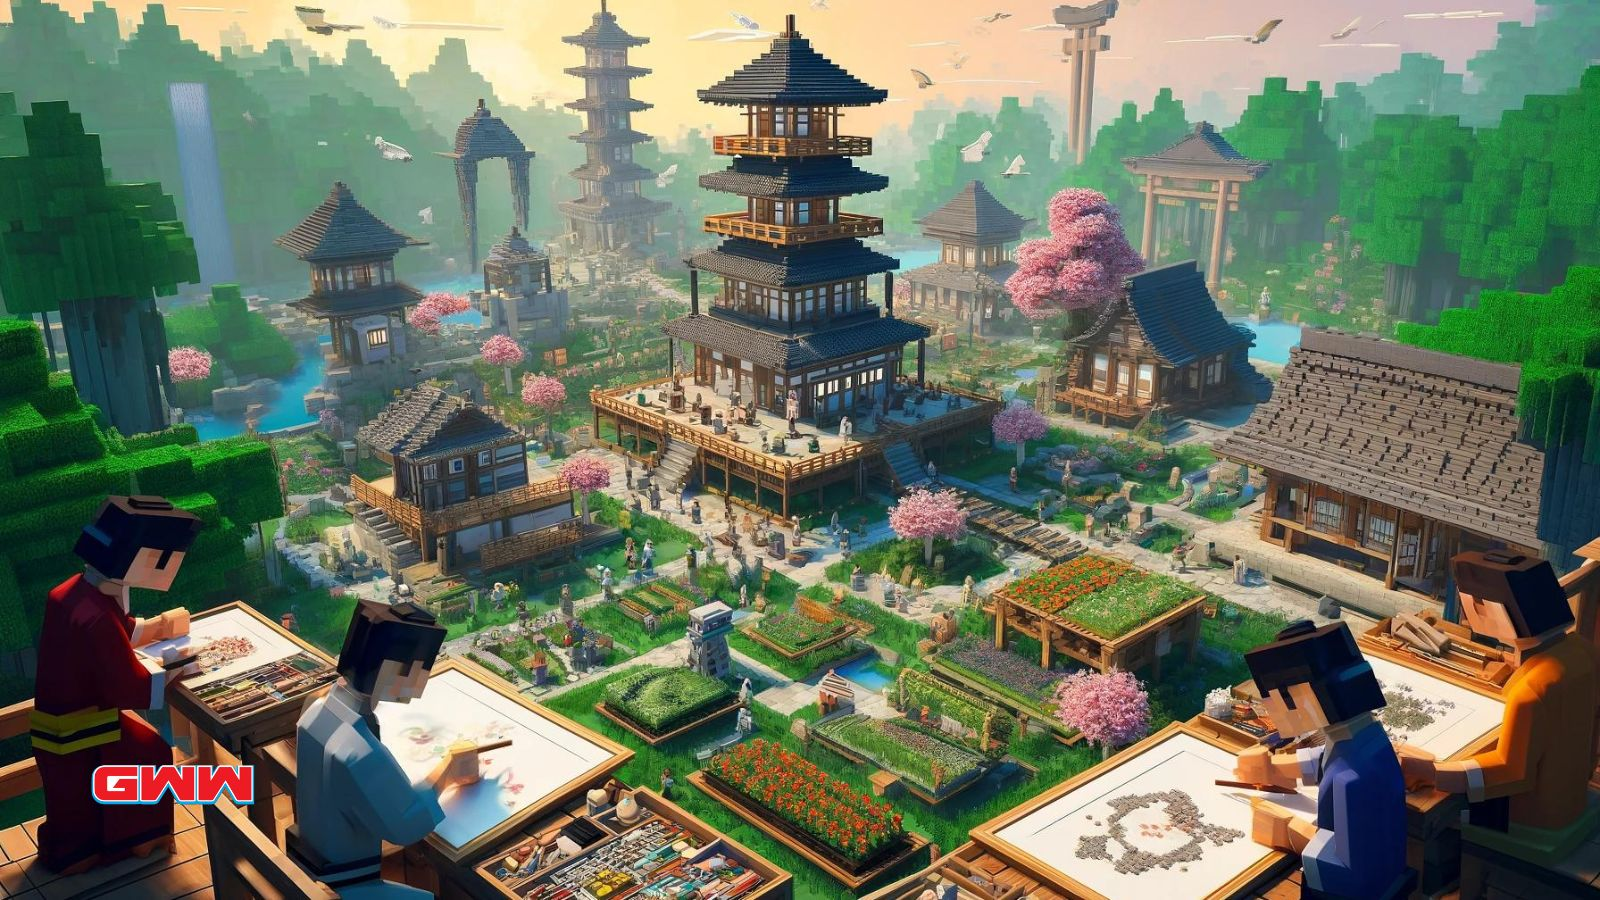 Una escena detallada que representa el proceso de creación de un mundo de inspiración japonesa dentro de un entorno virtual estilo Minecraft.